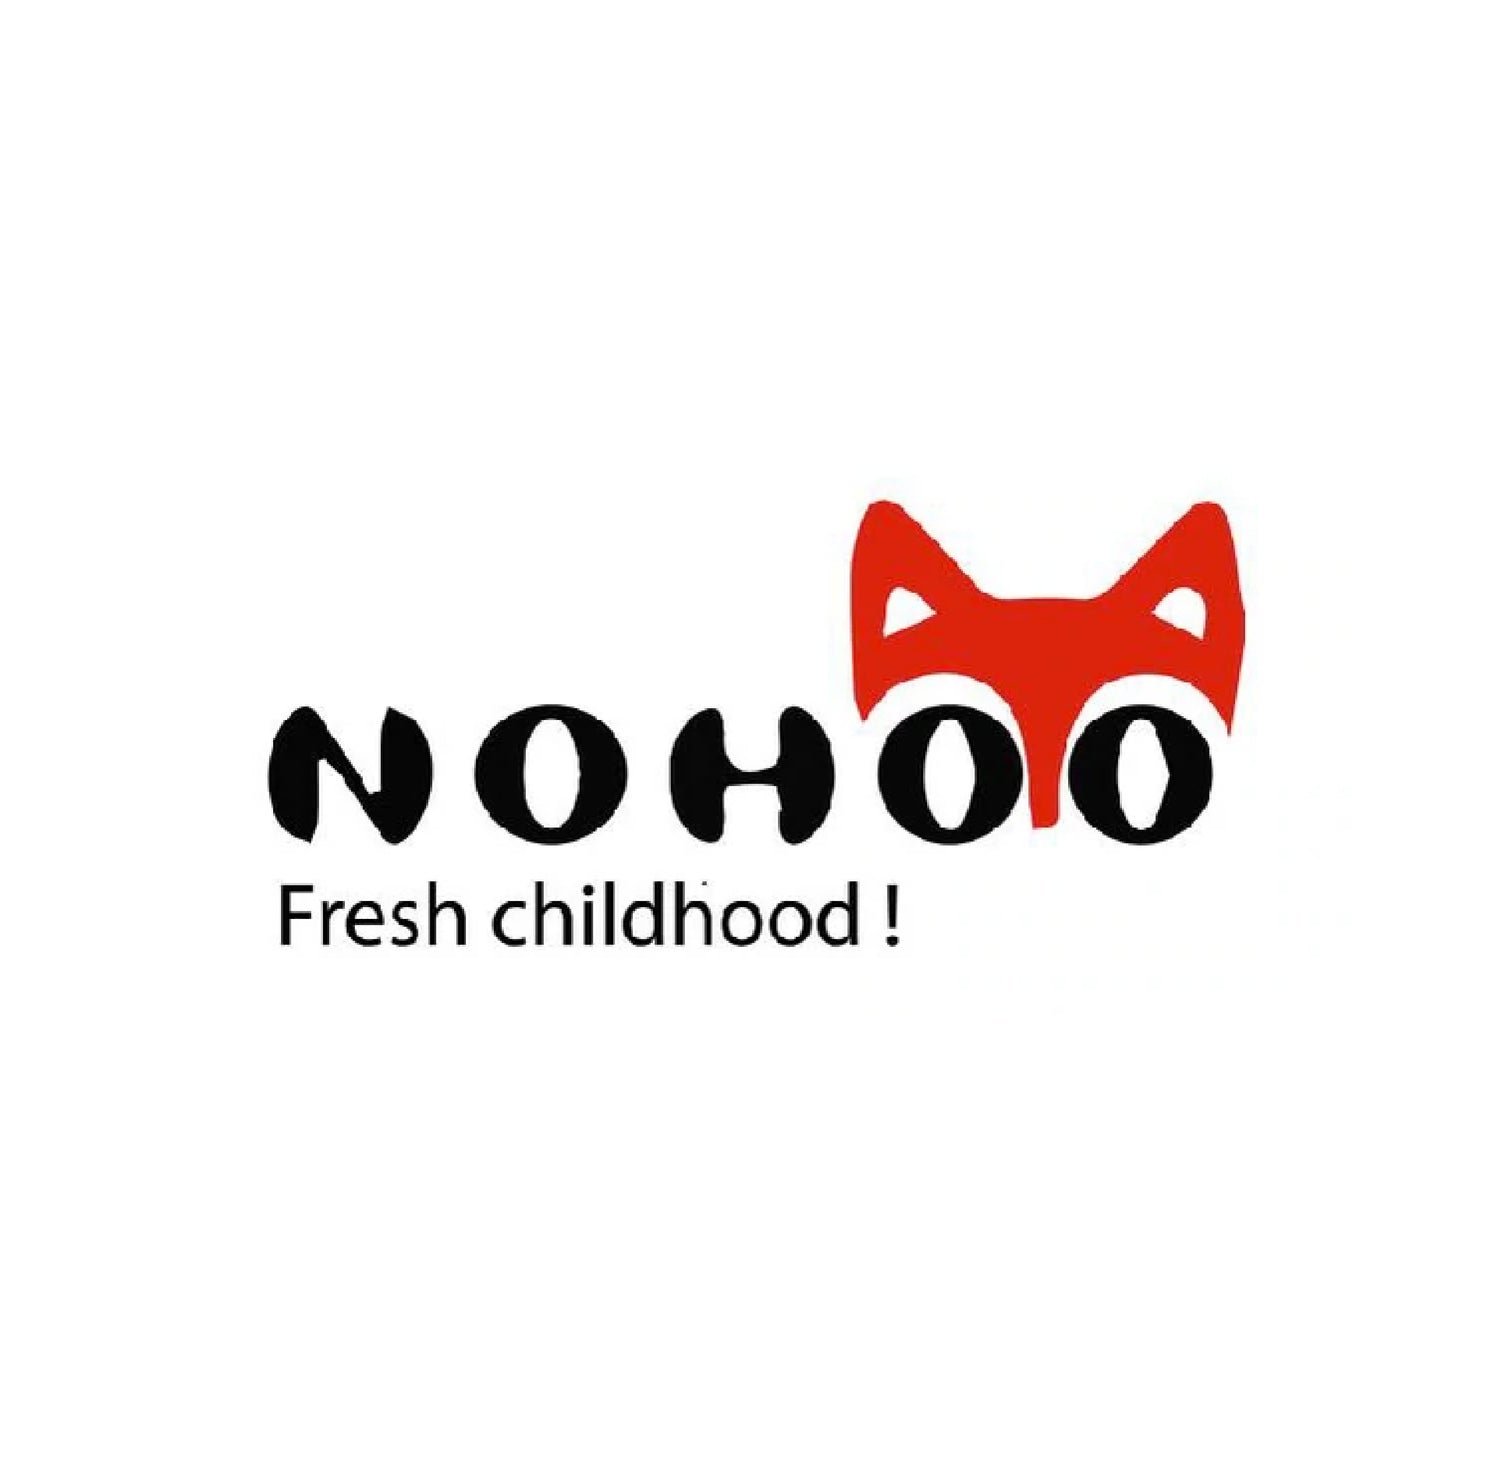 Nohoo